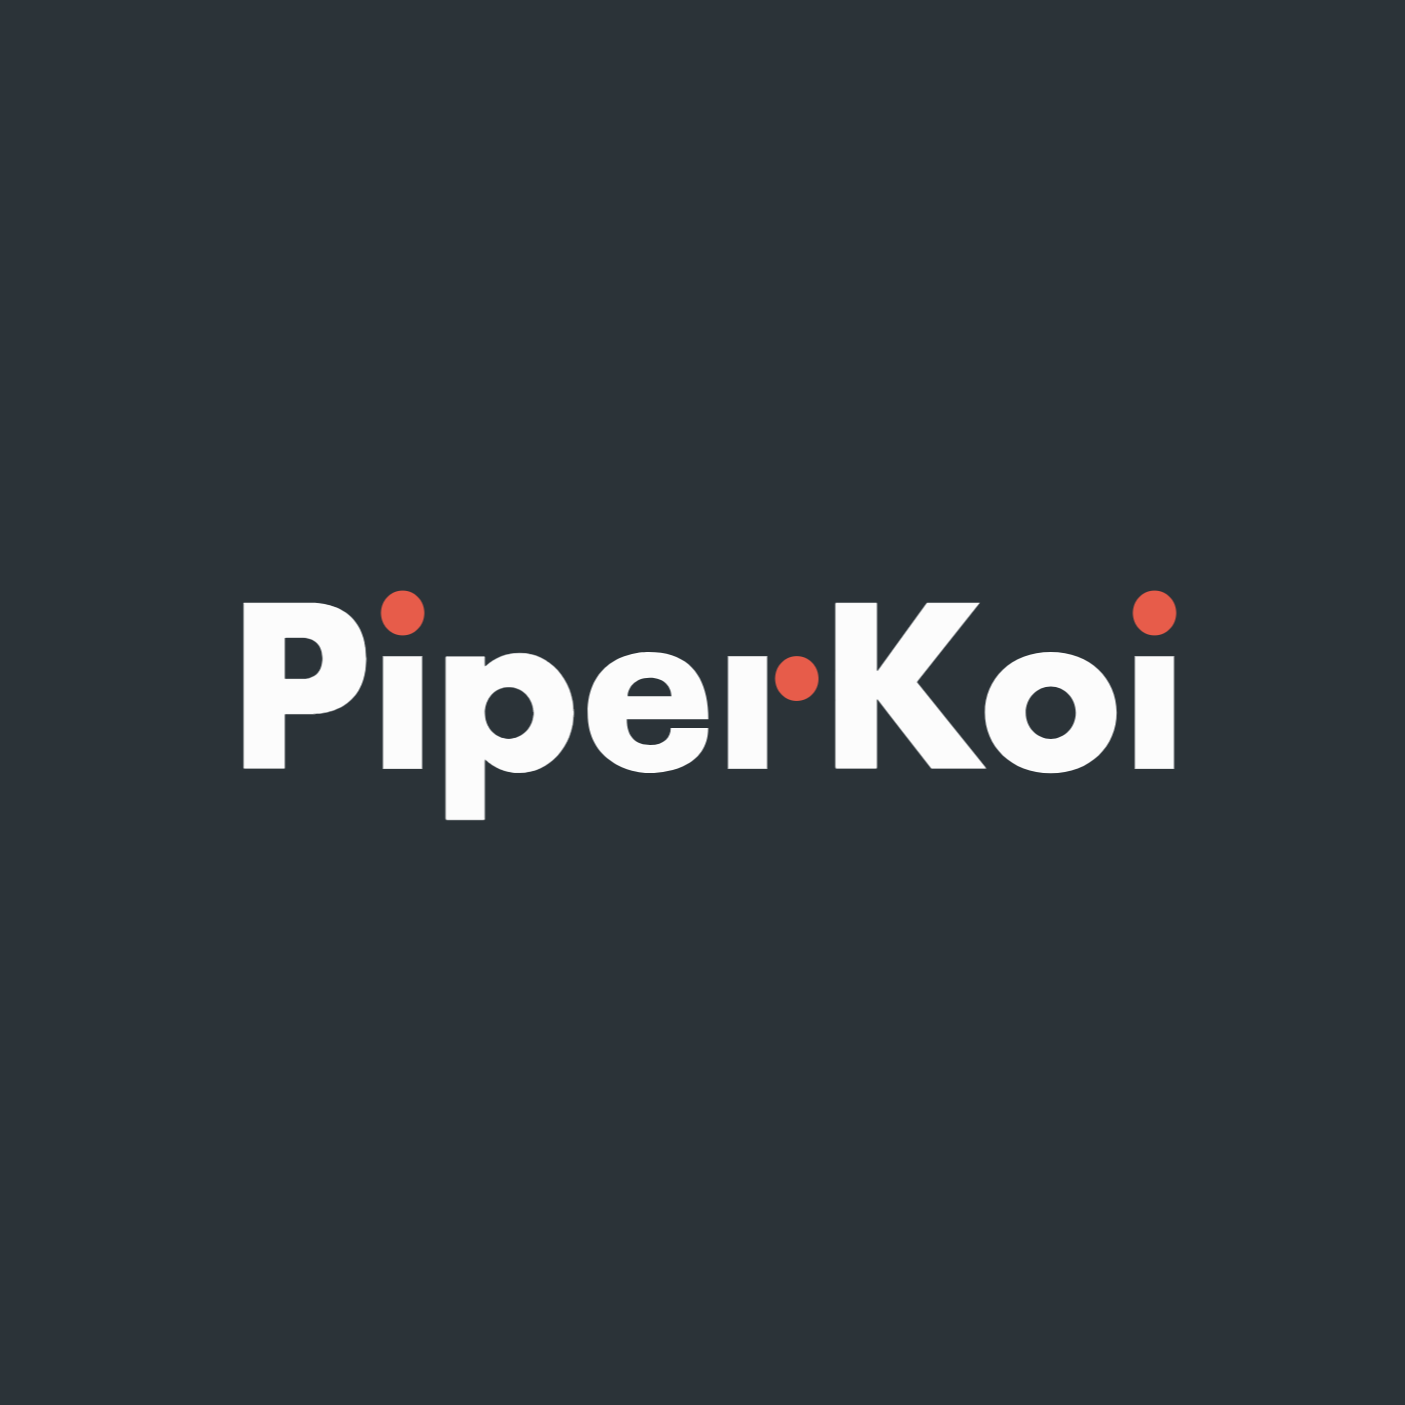 PiperKoi Investor Services